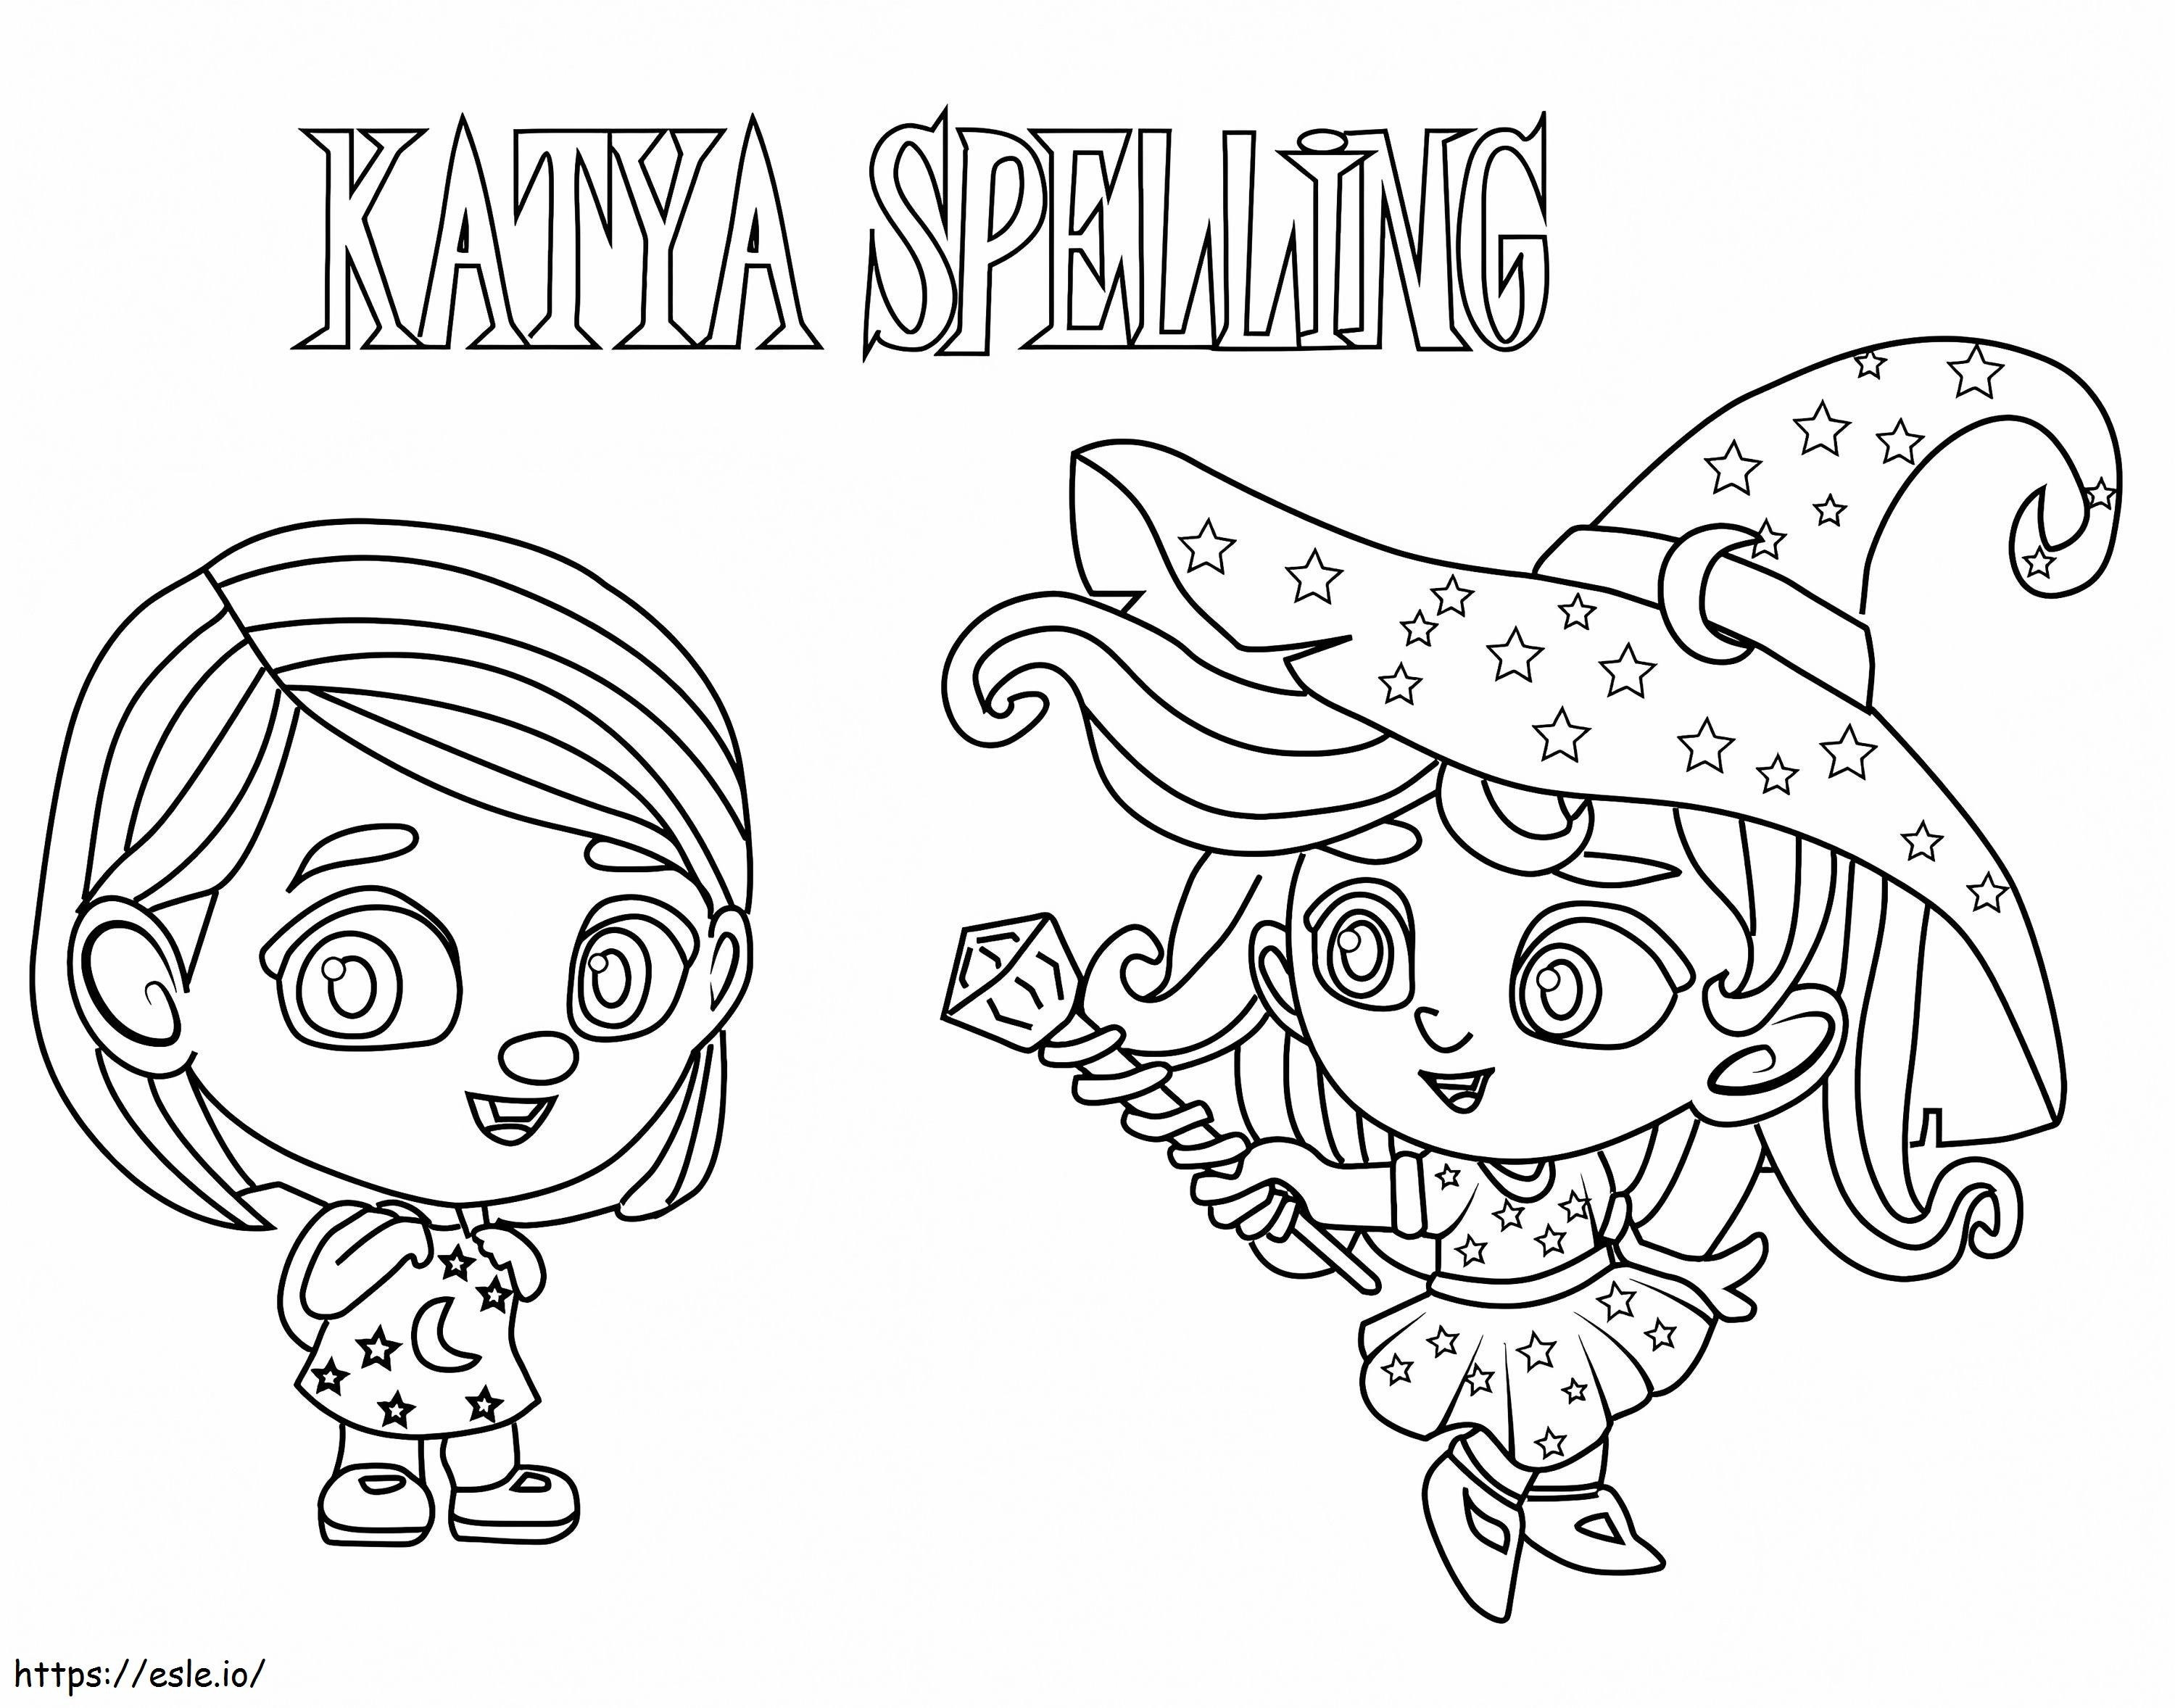 Katya-spelling van Super Monsters kleurplaat kleurplaat